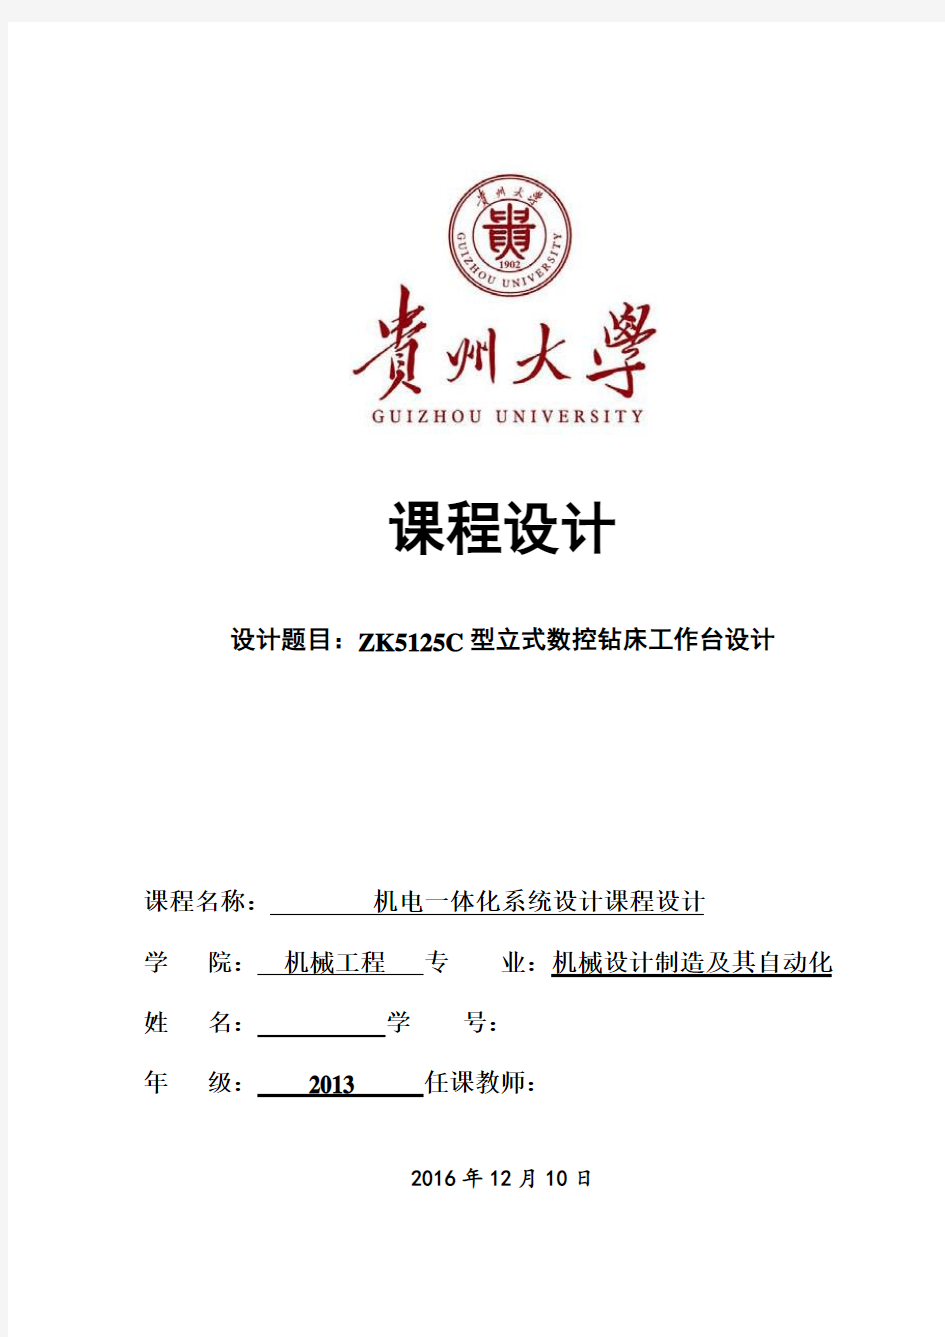 贵州大学机电一体化课程设计说明书最终版